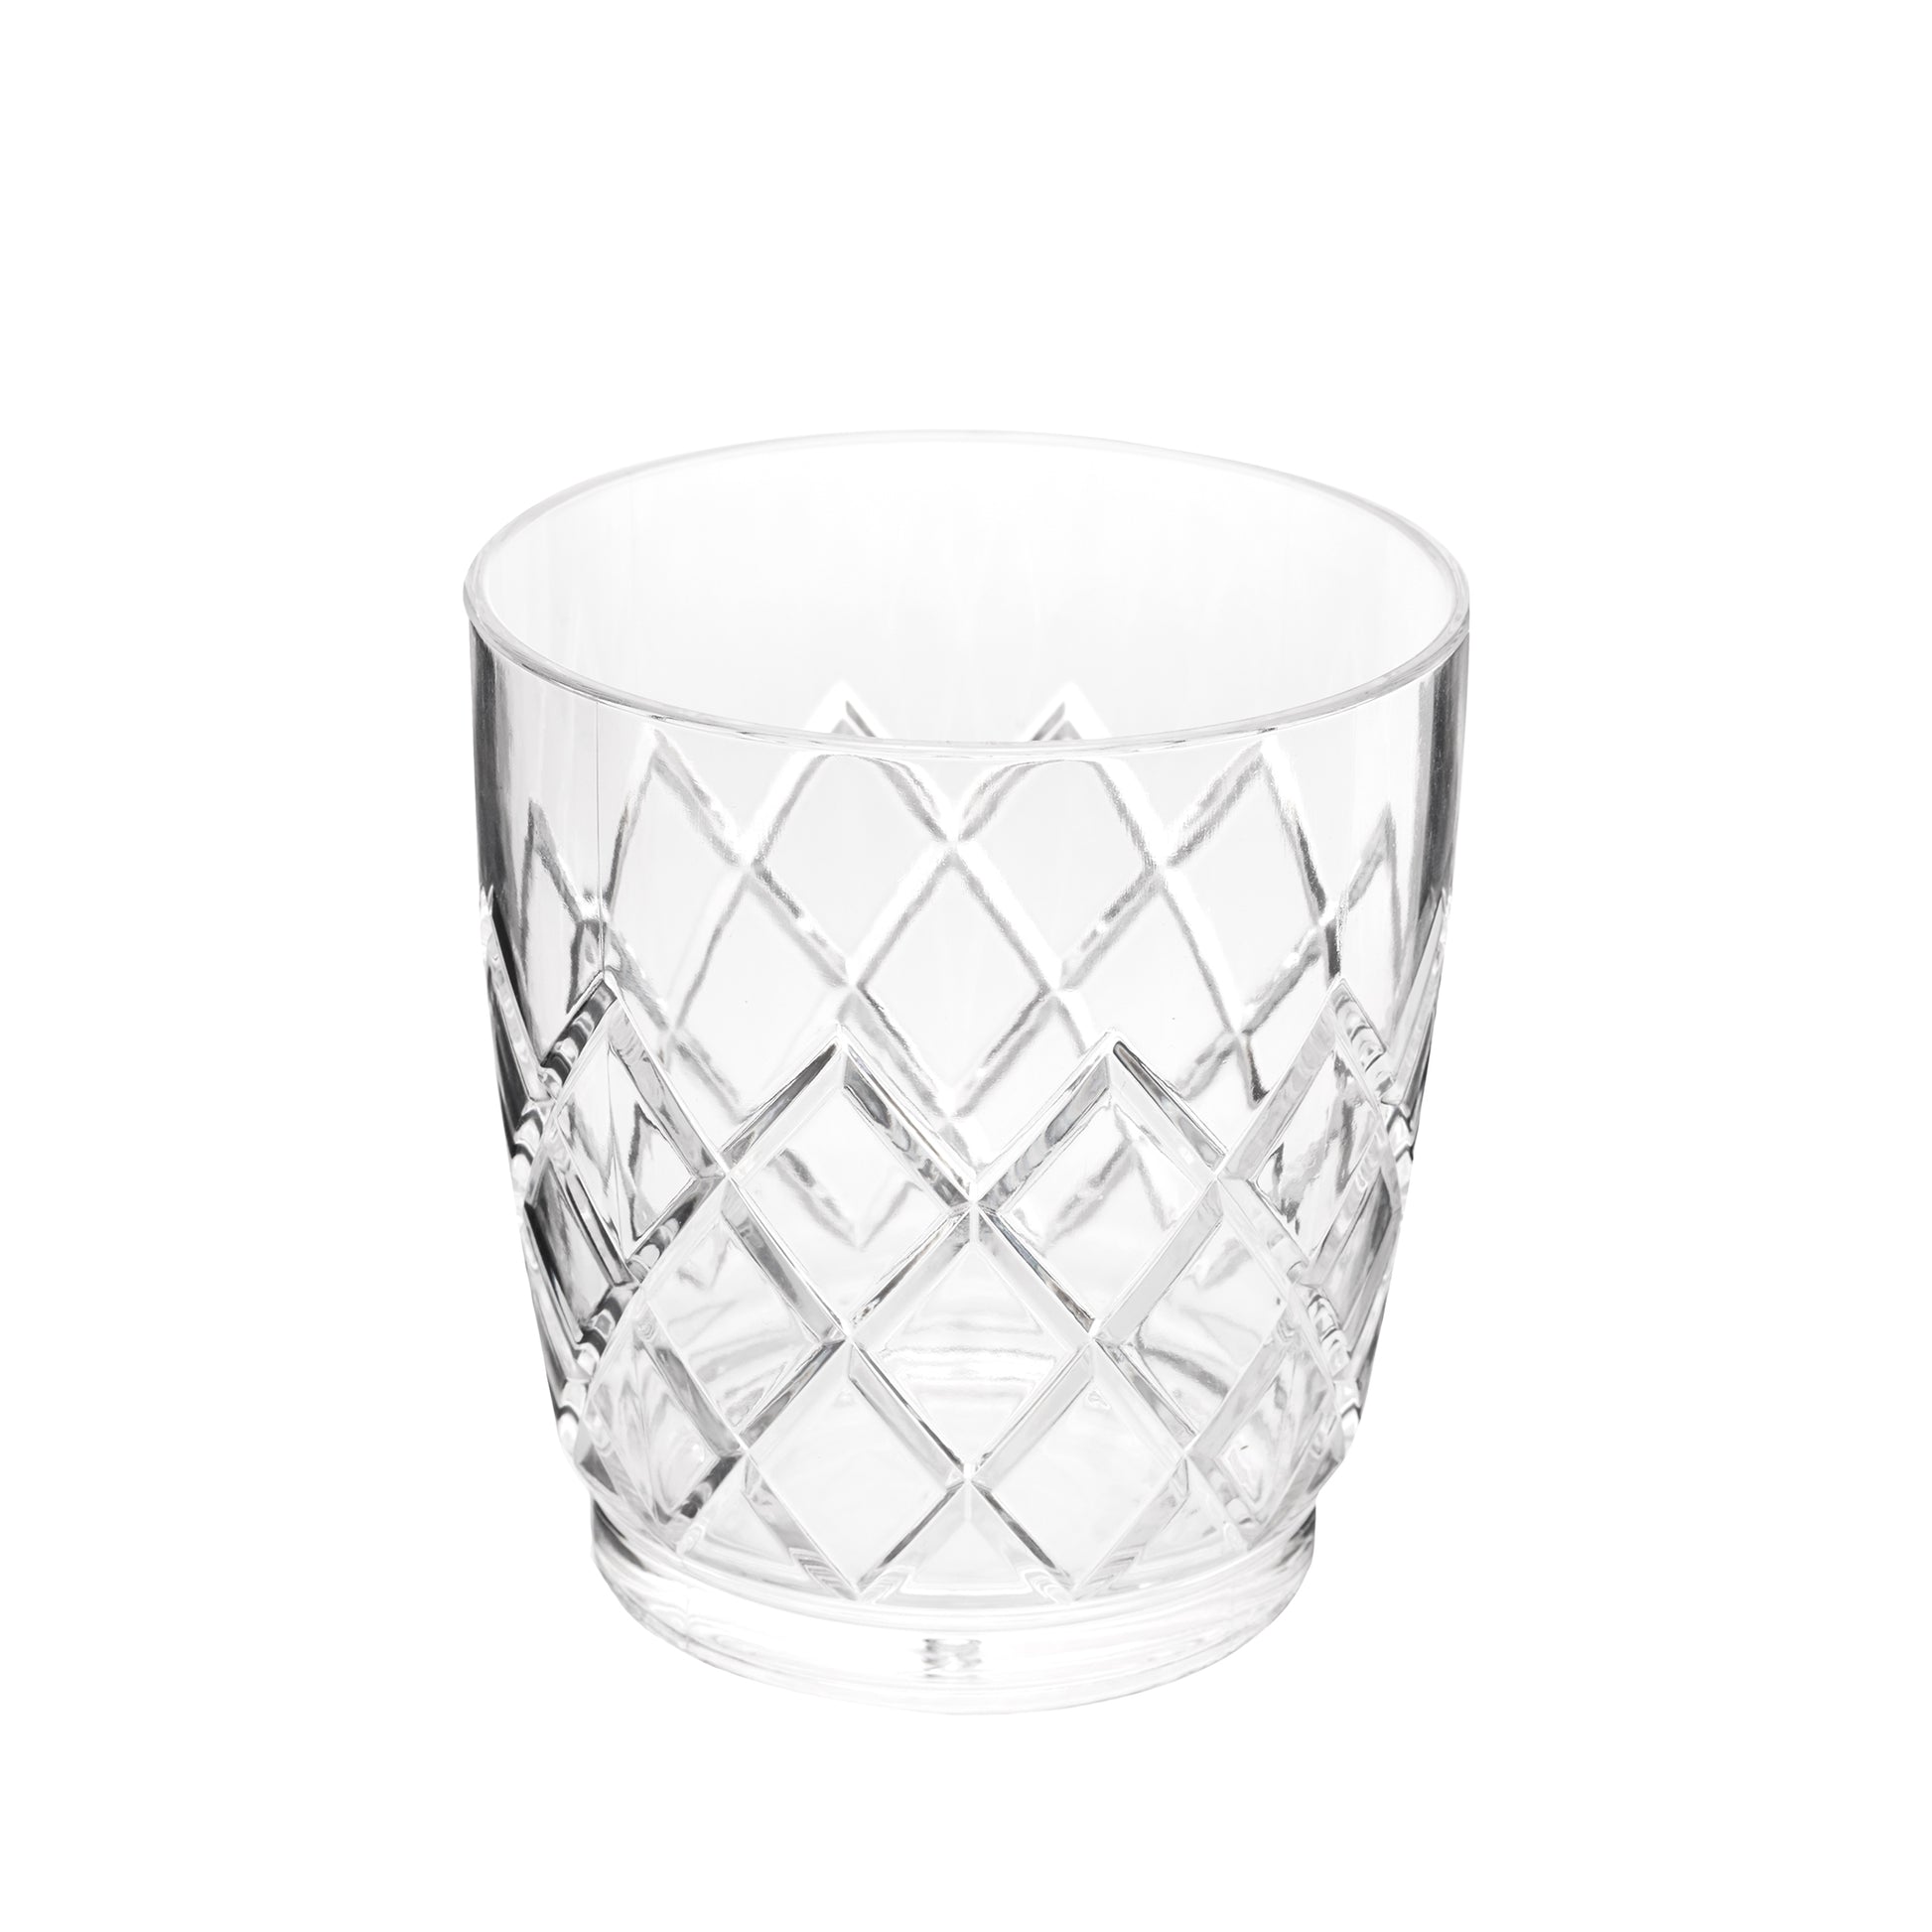 YARAI® ACRYLIC STACKABLE DOUBLE ROCKS GLASS – 10oz (295ml) / ACRYLIC / STACKABLE / 6 PACK